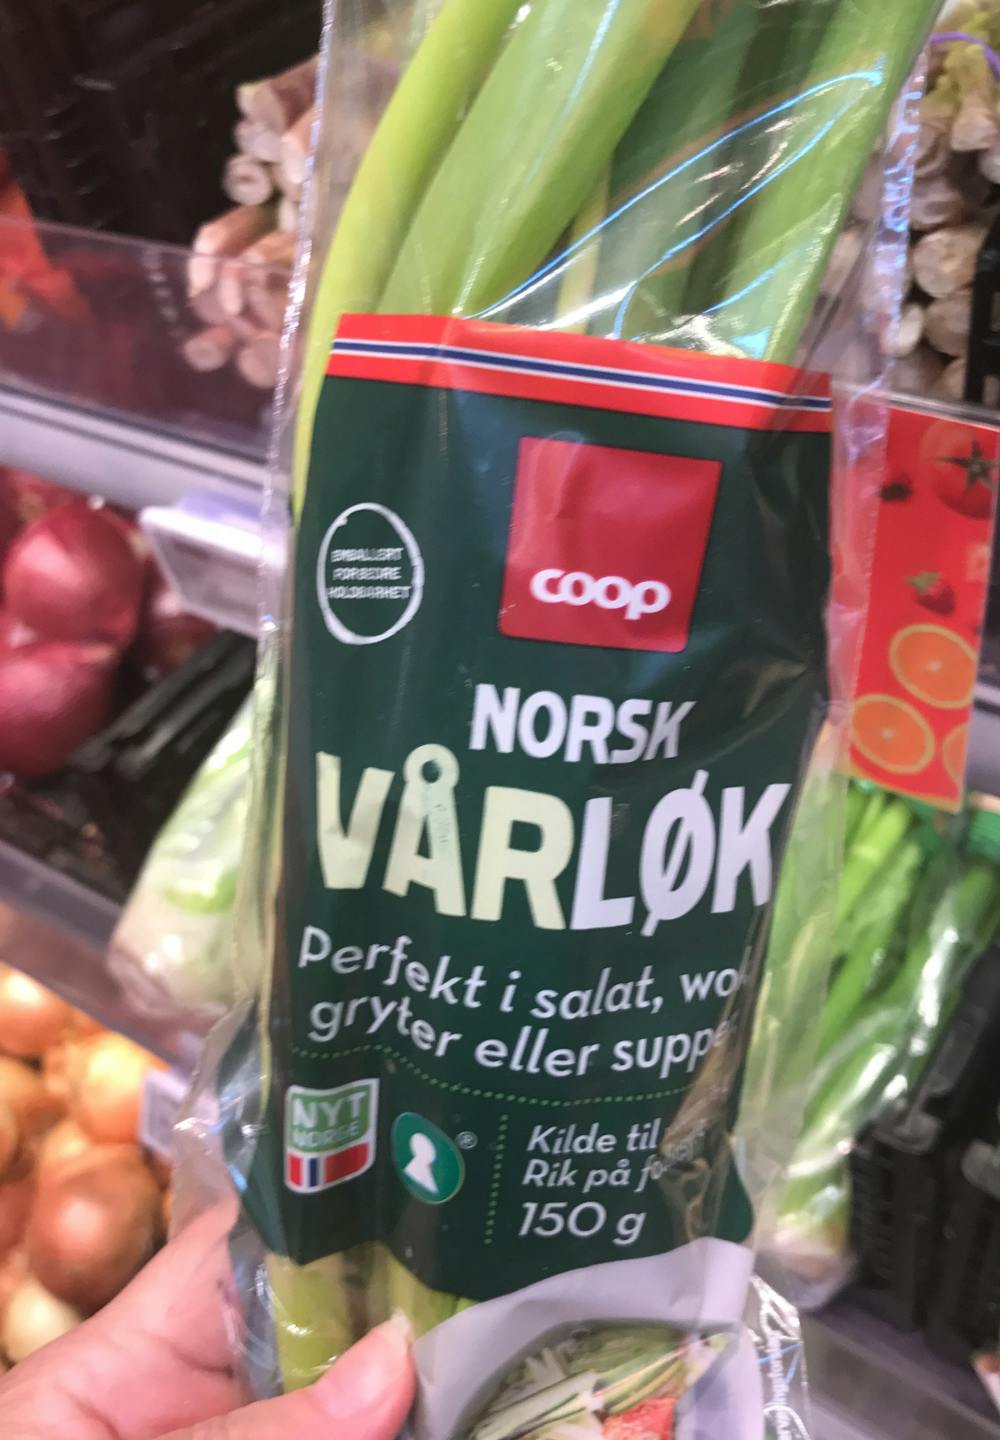 Norsk vårløk, Coop